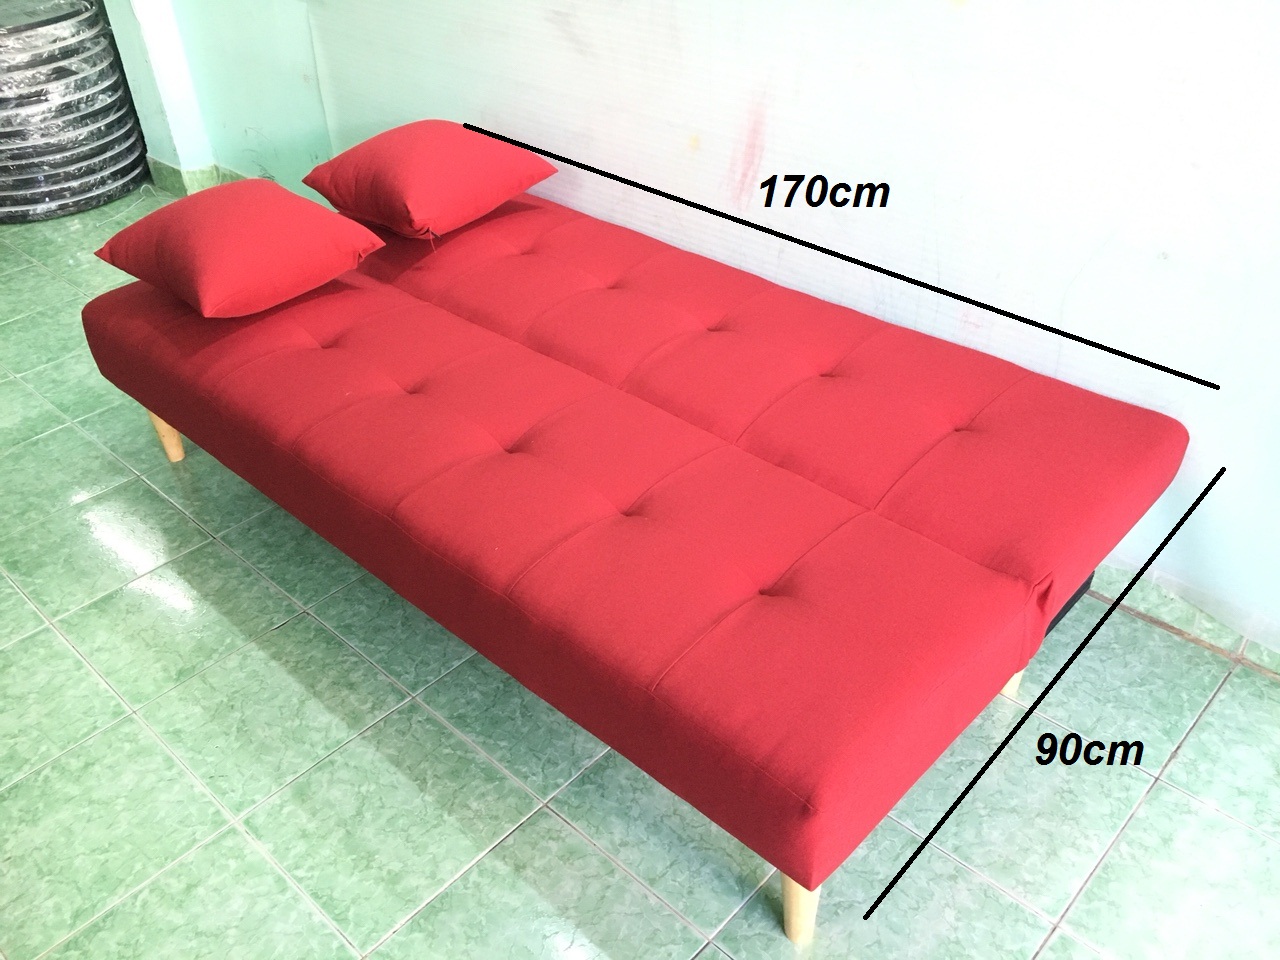 Sofa bed, sofa giường cà rốt viền đen CRVD 1m7x90, bộ sofa phòng khách, salon, sopha, sa lông, sô pha, bàn ghế sofa